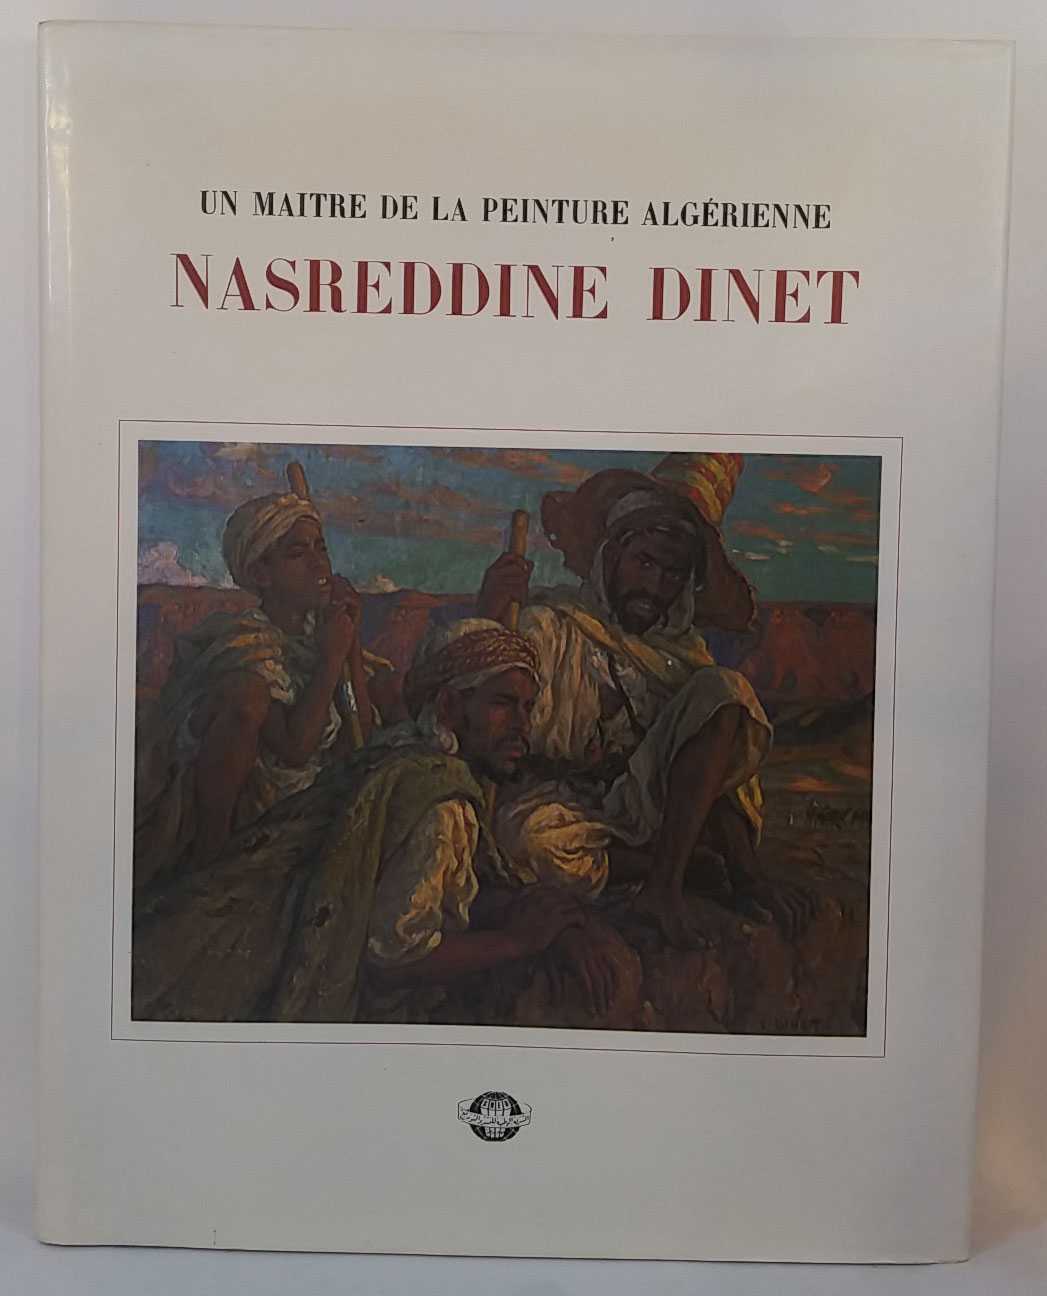 Sid Ahmed Baghli - Nasreddine Dinet:Un Maitre de la Peinture Algerienne